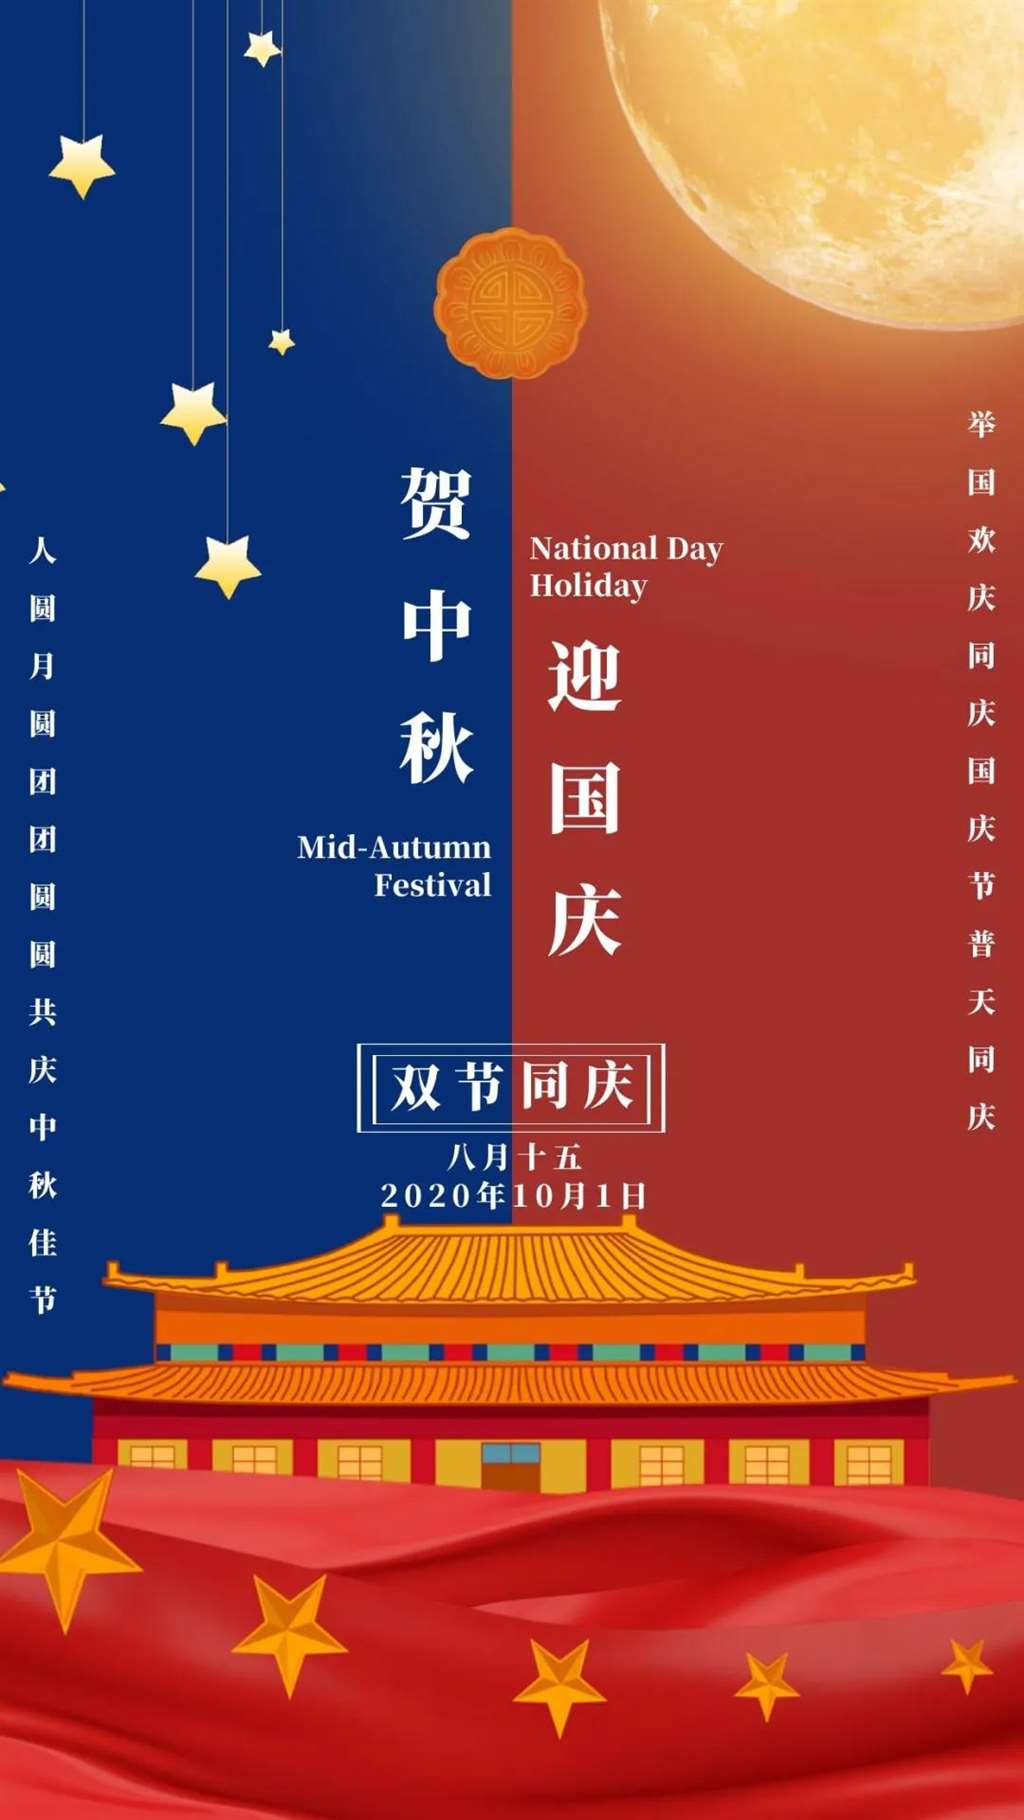 中秋 国庆双节的创意文案海报鉴赏